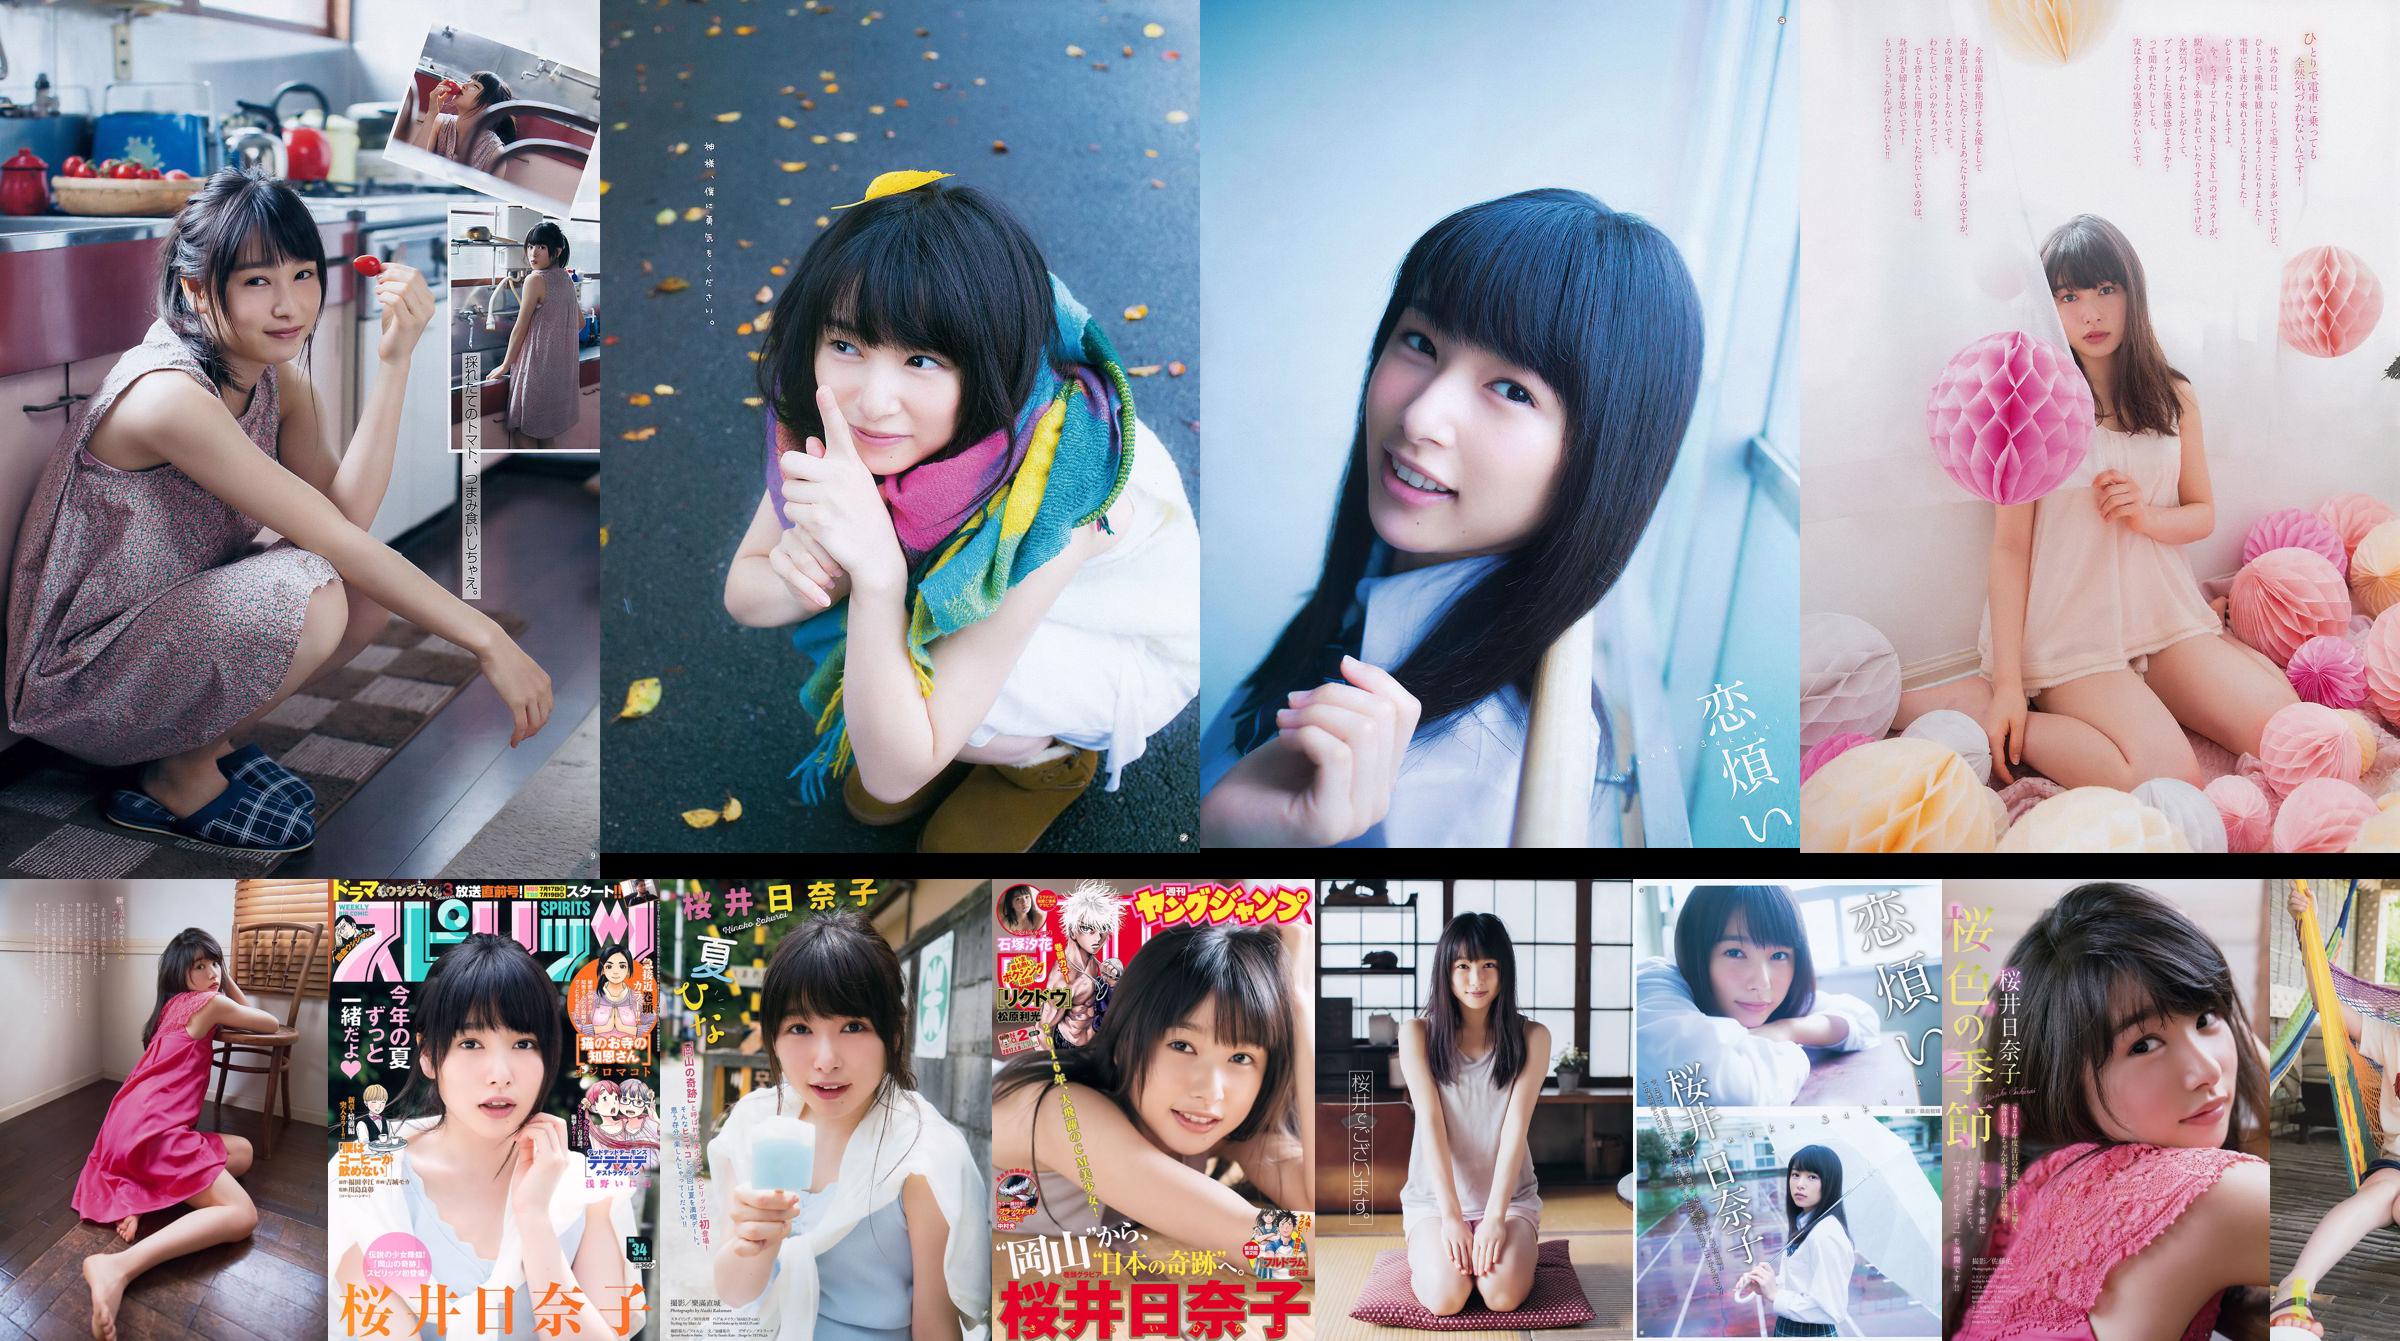 [Młody Gangan] Sakurai Hinako 2015 nr 22 Photo Magazine No.5aeb1b Strona 2